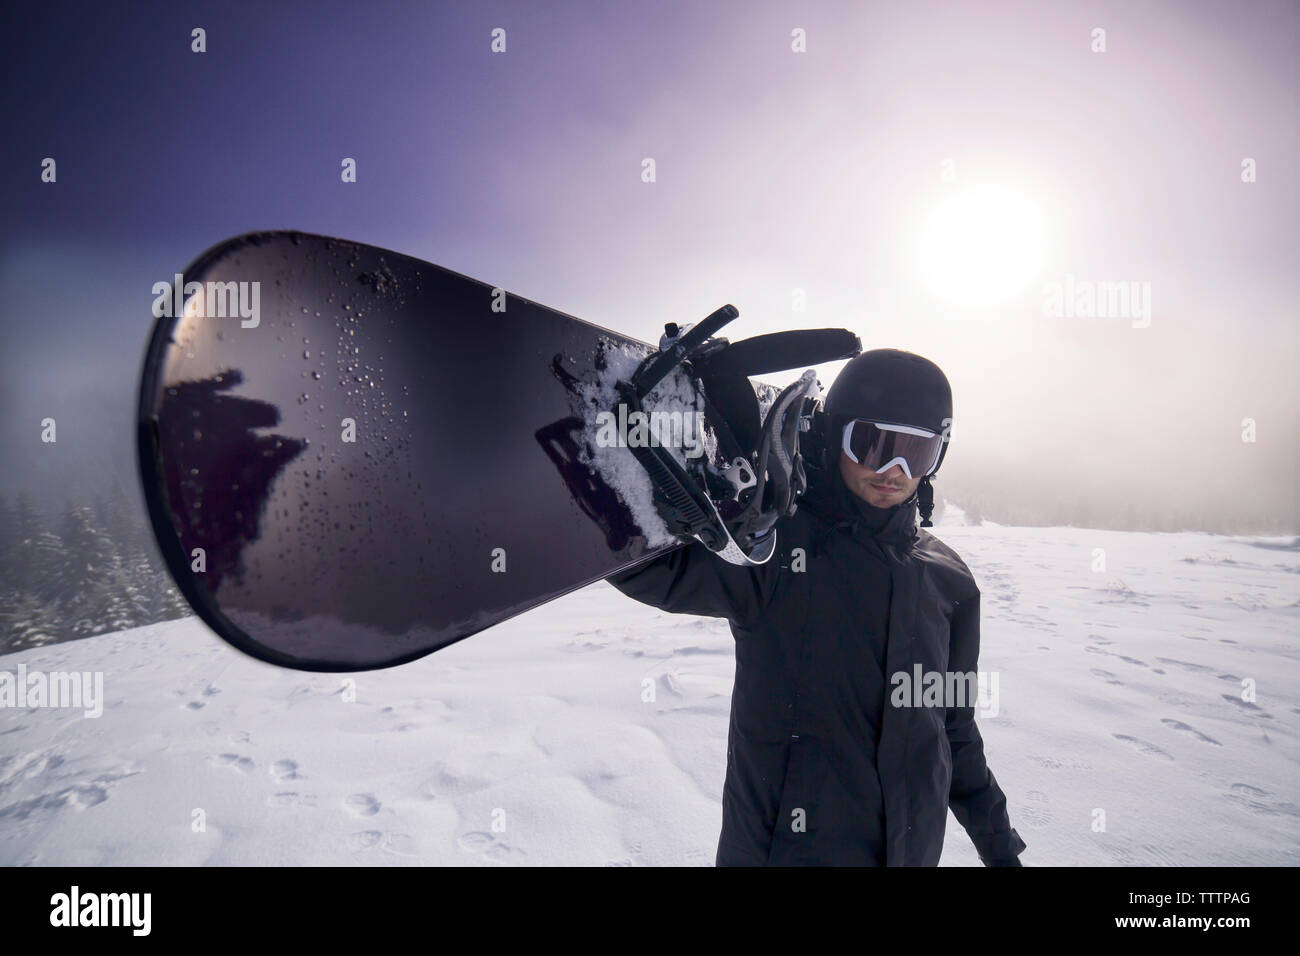 Retrato del hombre llevando esquiar en el paisaje nevado contra sky Foto de stock